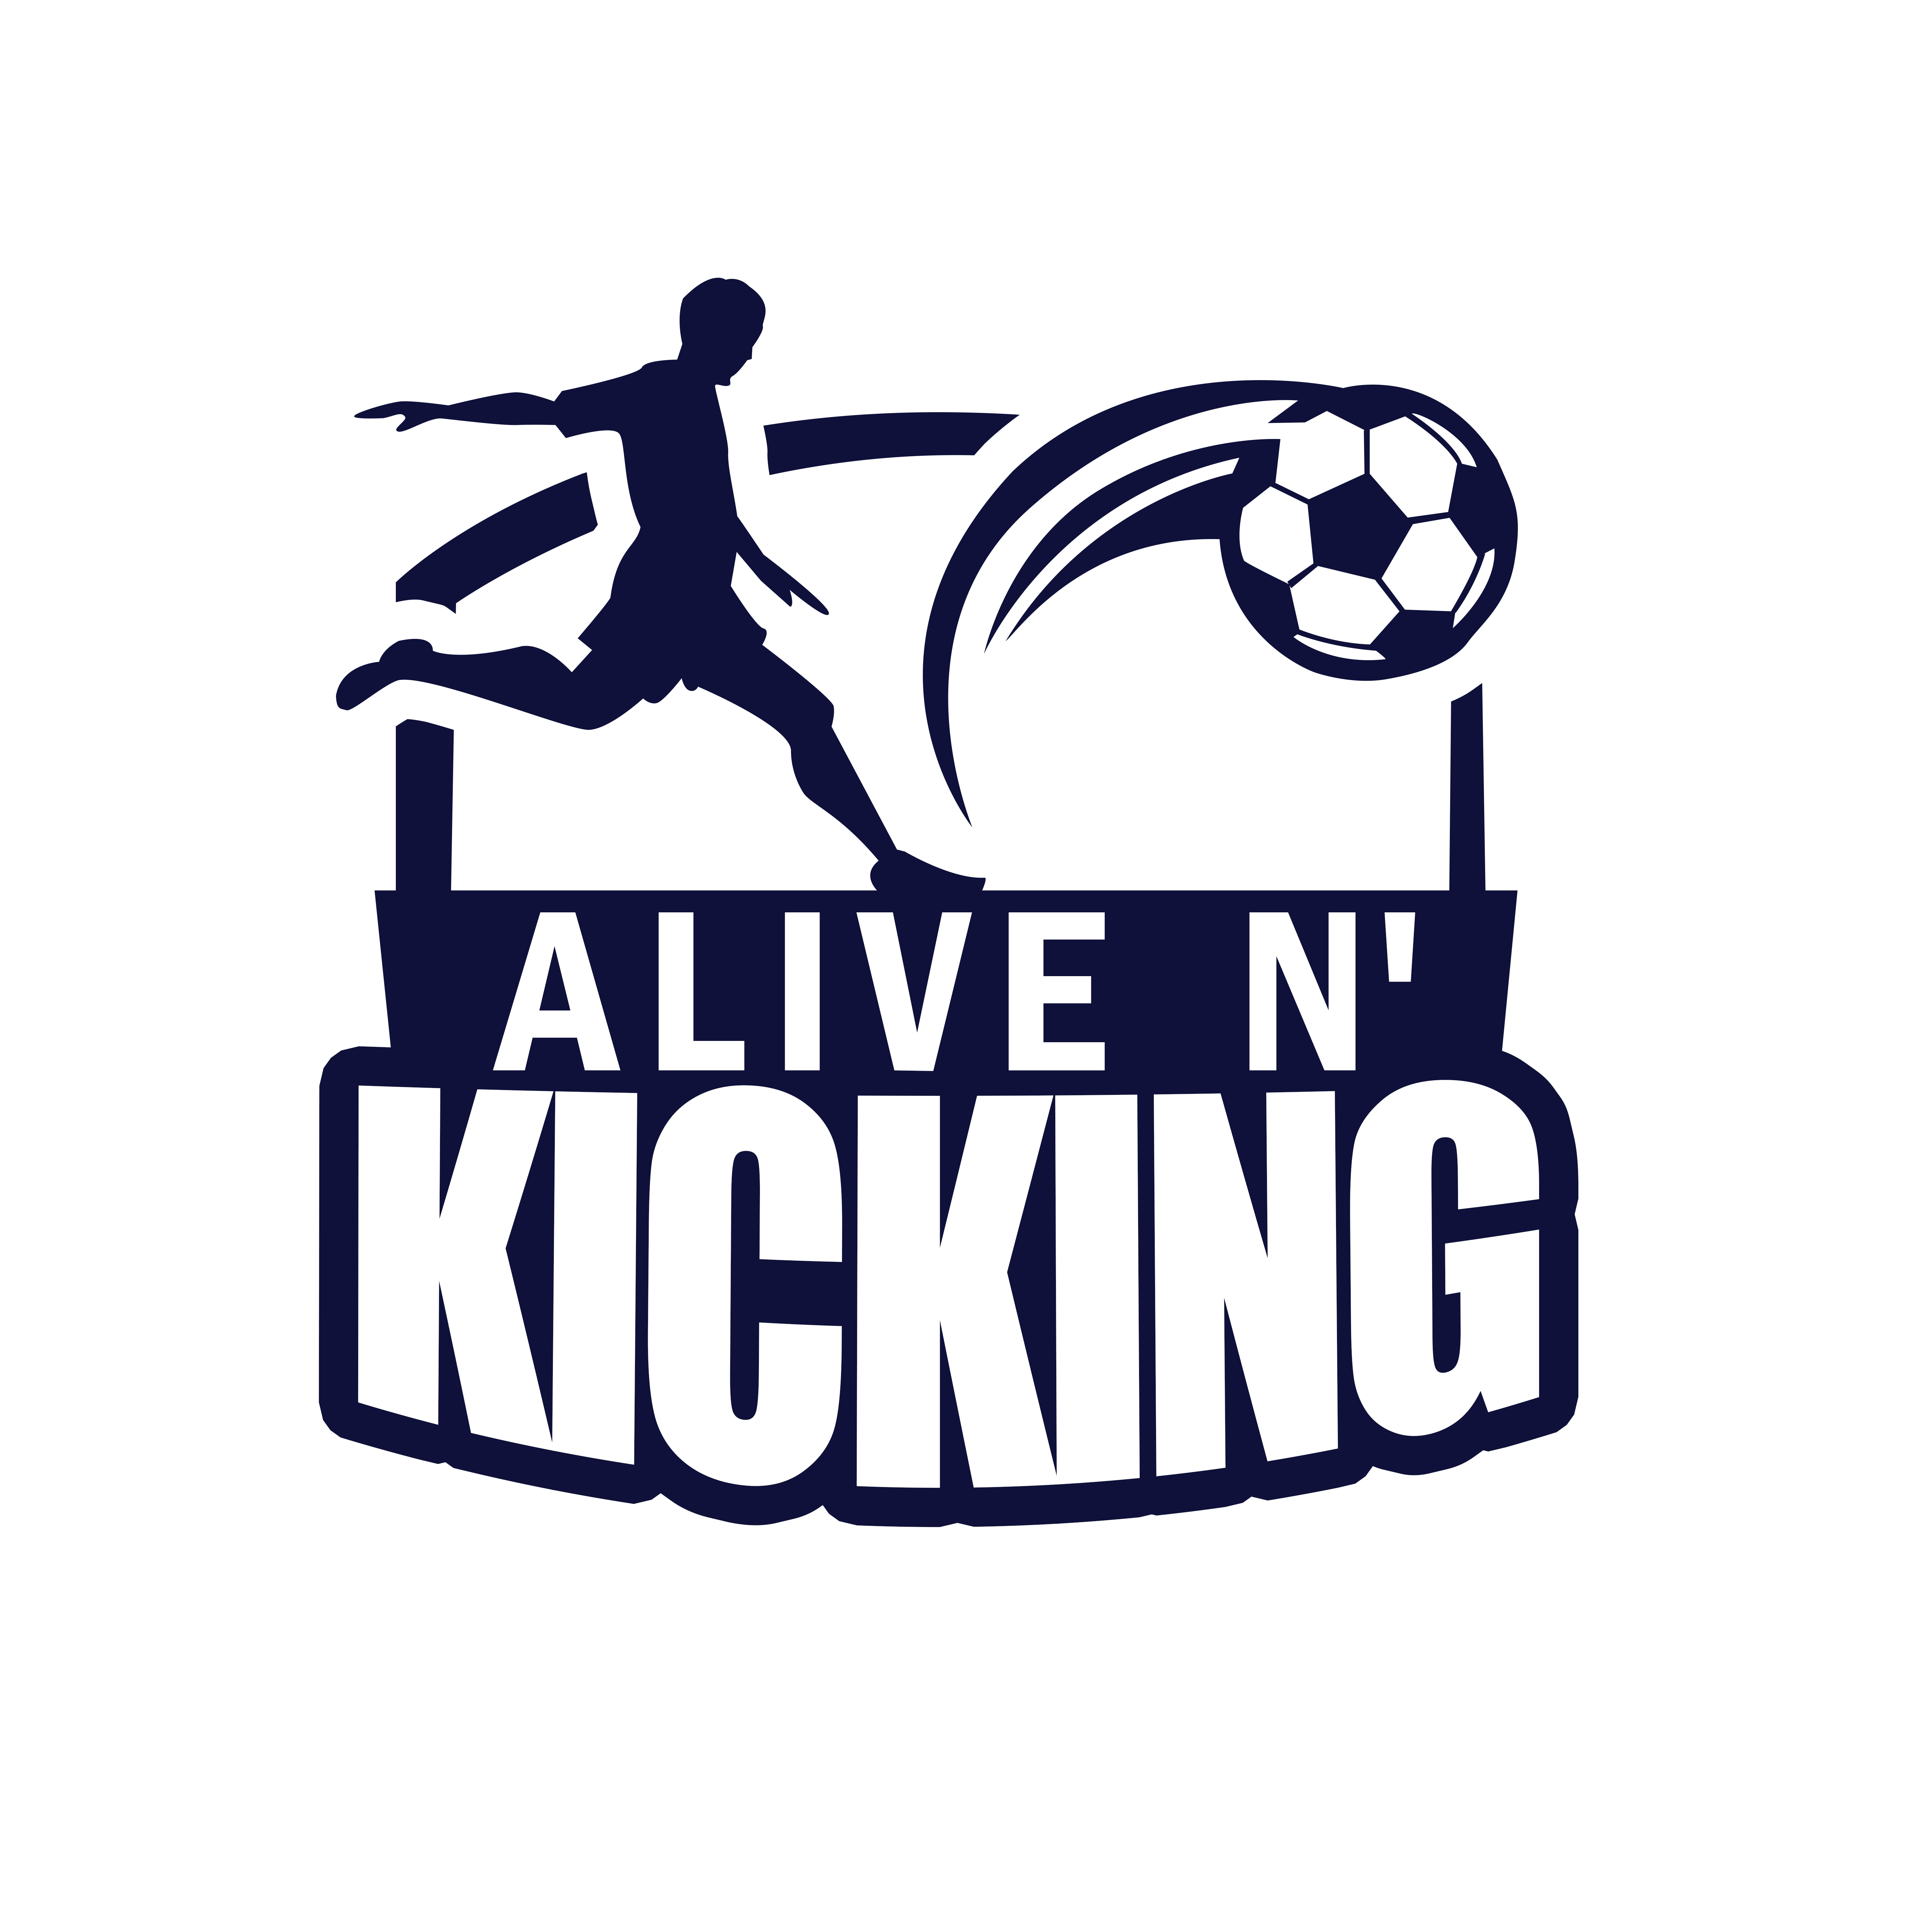 Alive N Kicking